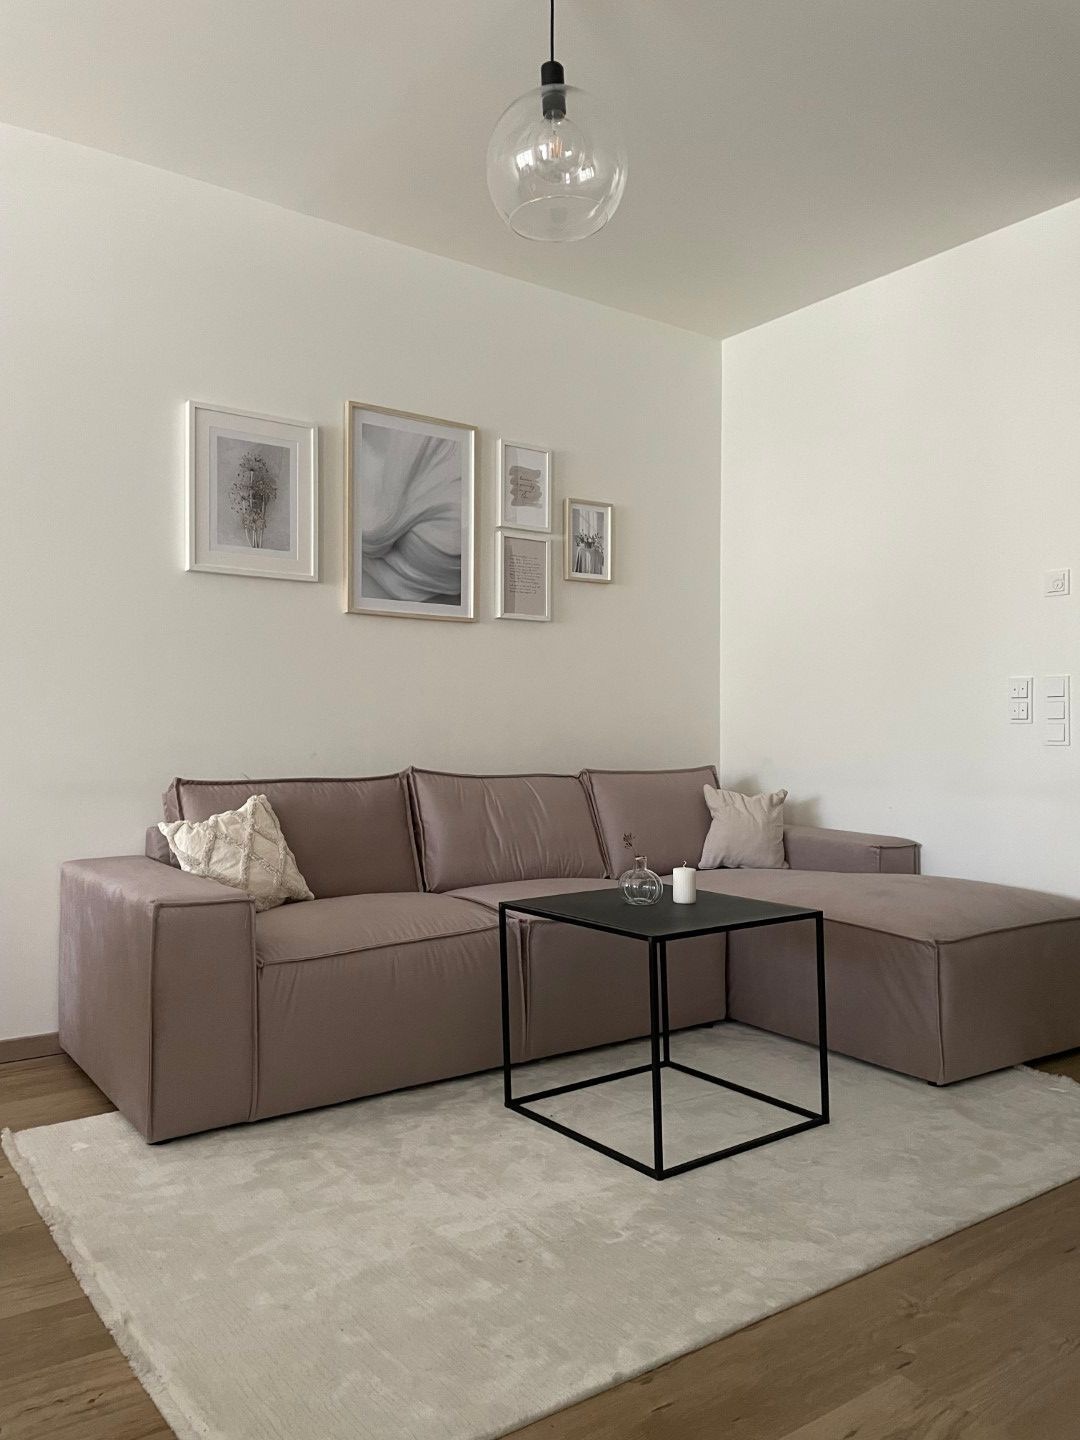 Welche Accessoires Sollte Man Zu Einem Braunen Sofa Wählen? | Slf24 for Wohnzimmer Braune Couch